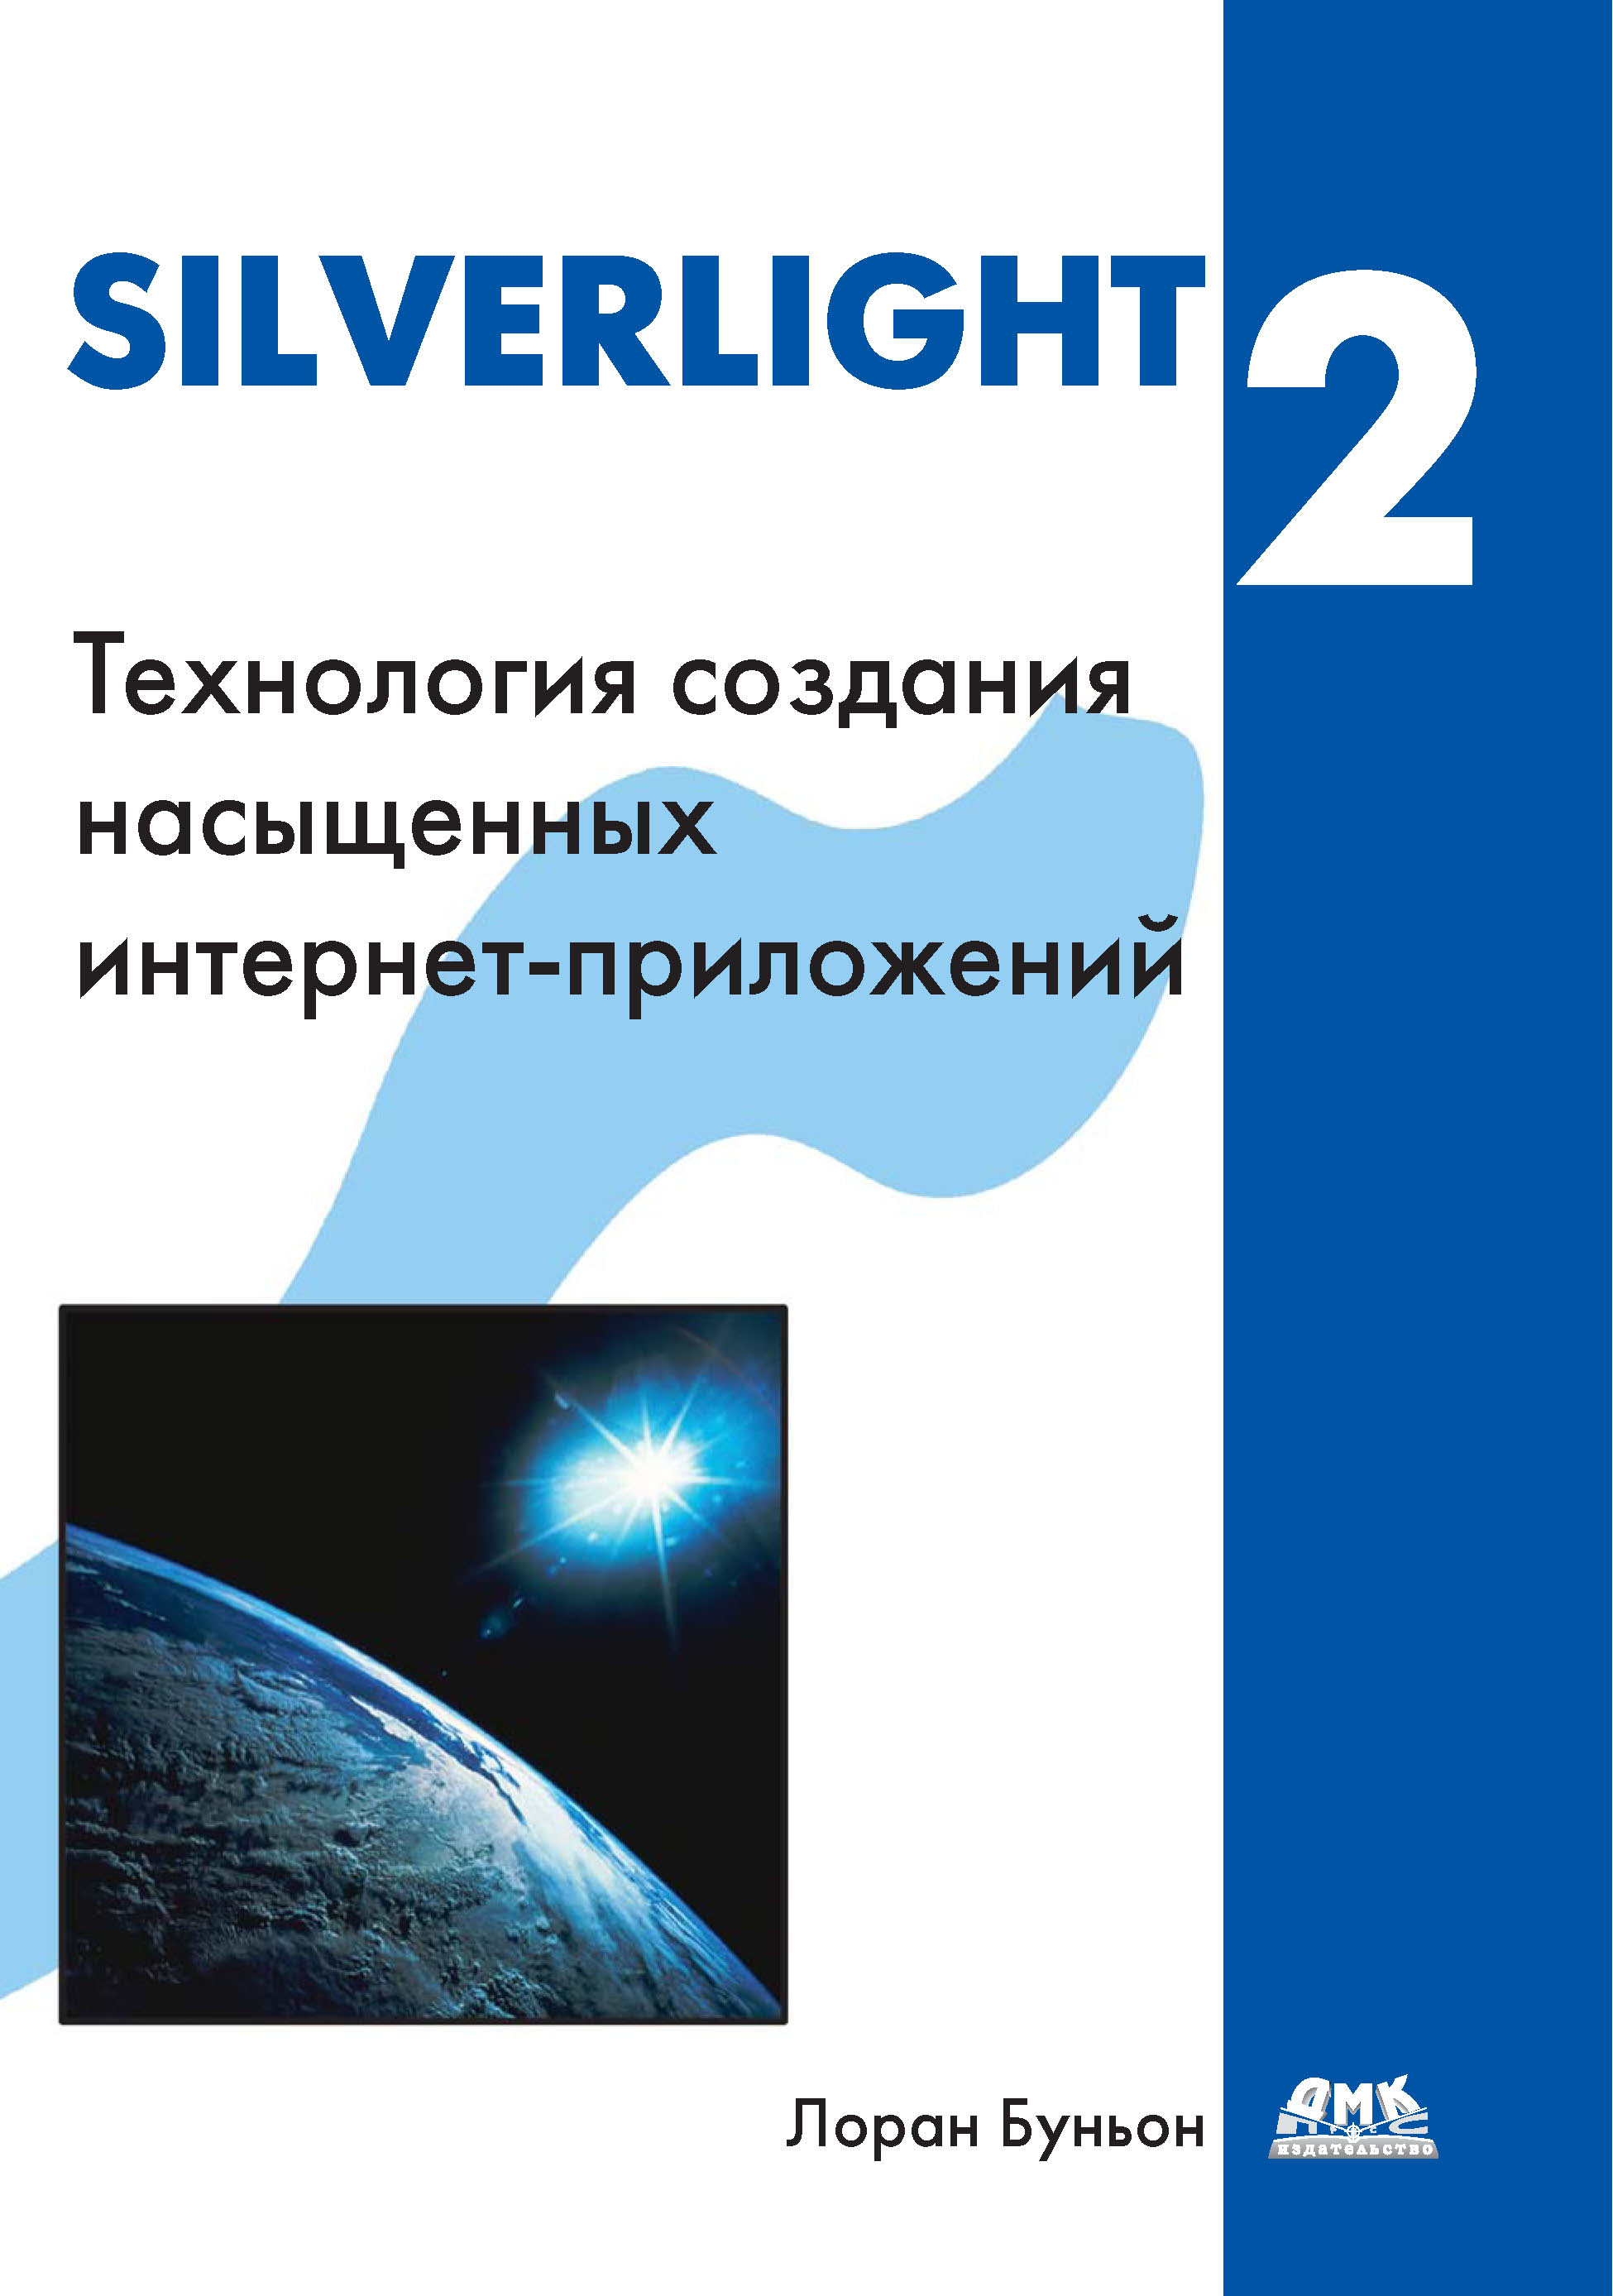 Книга  Silverlight 2 созданная Лоран Буньон, А. А. Слинкин может относится к жанру зарубежная компьютерная литература, интернет. Стоимость электронной книги Silverlight 2 с идентификатором 6358381 составляет 399.00 руб.